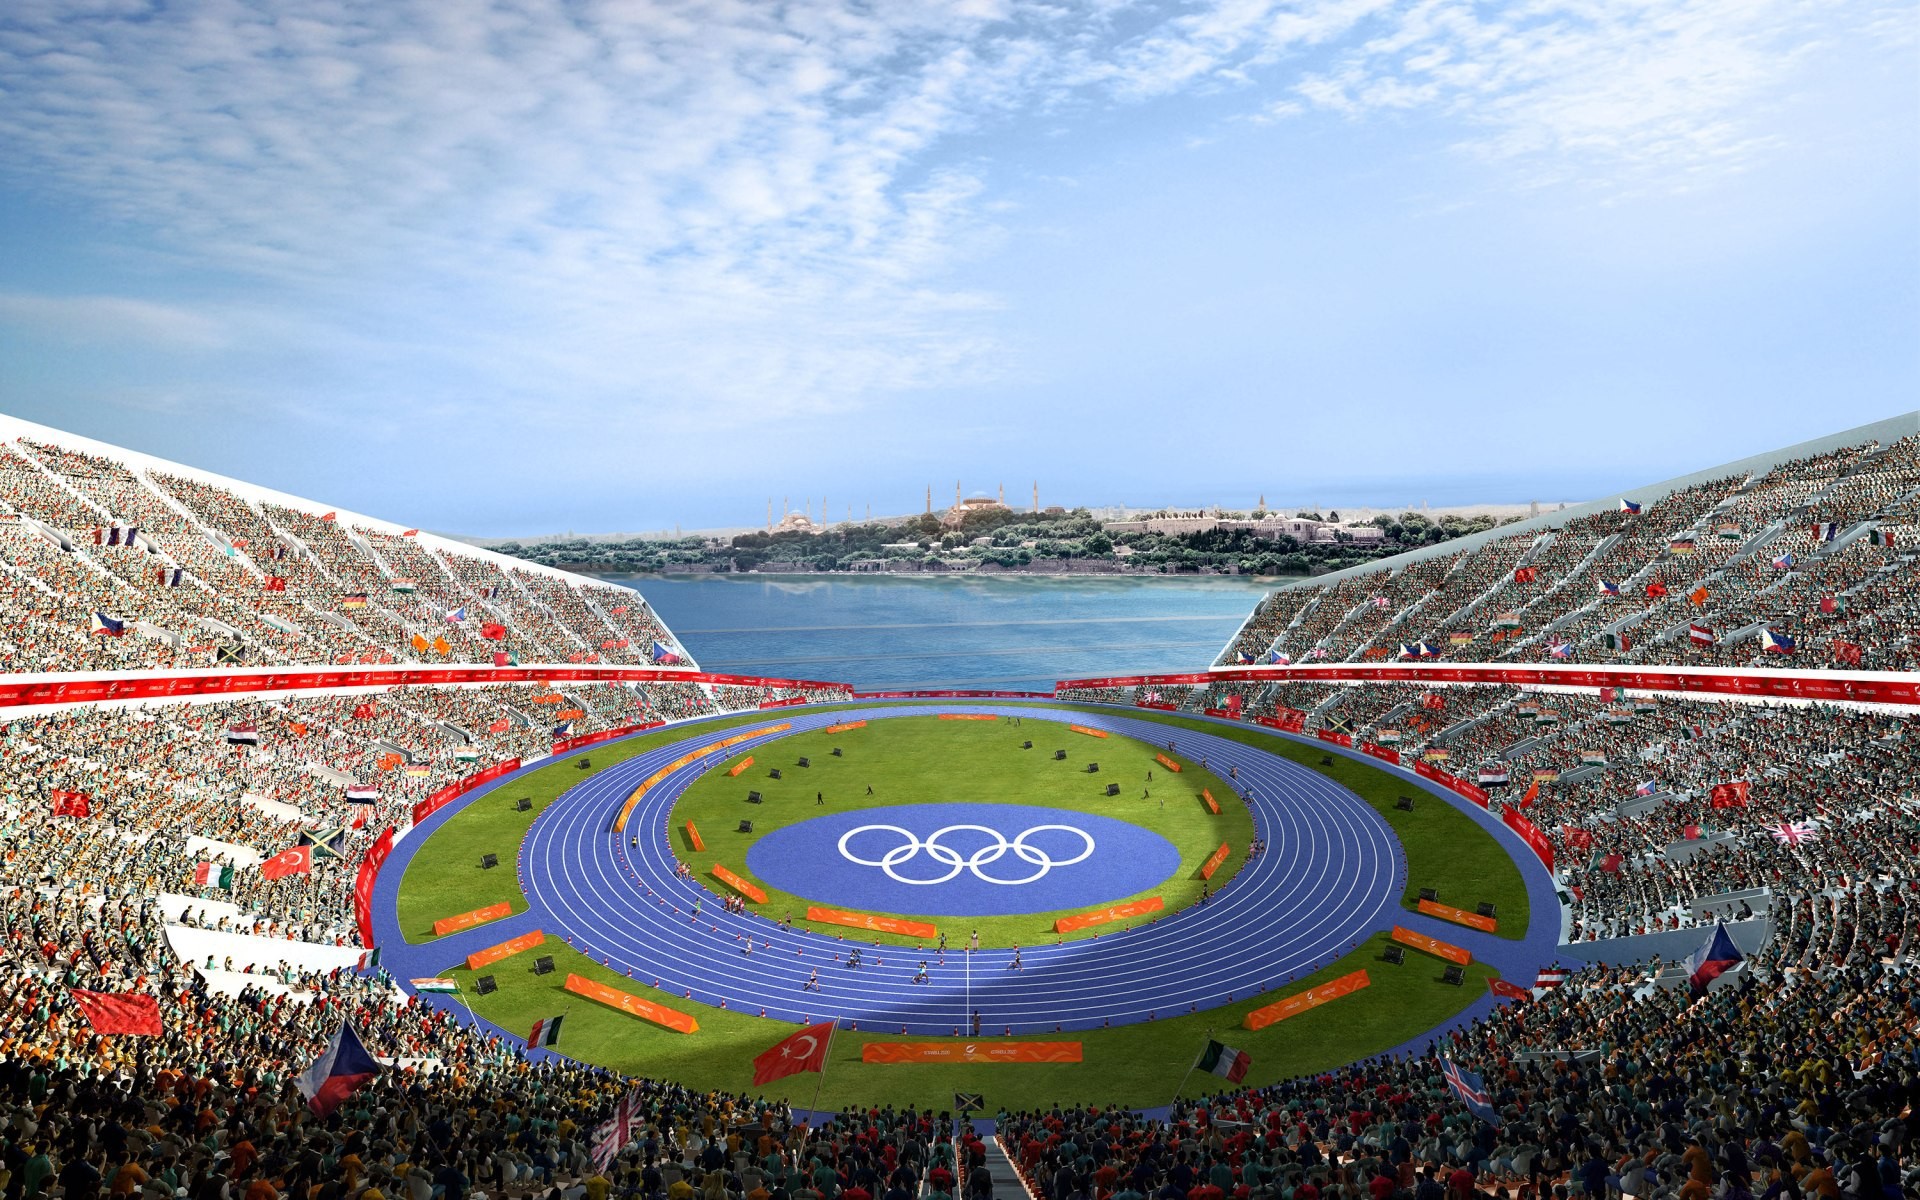 2024 Olympics Stadium The Olympic Games In Paris 2024 Paris Tourist